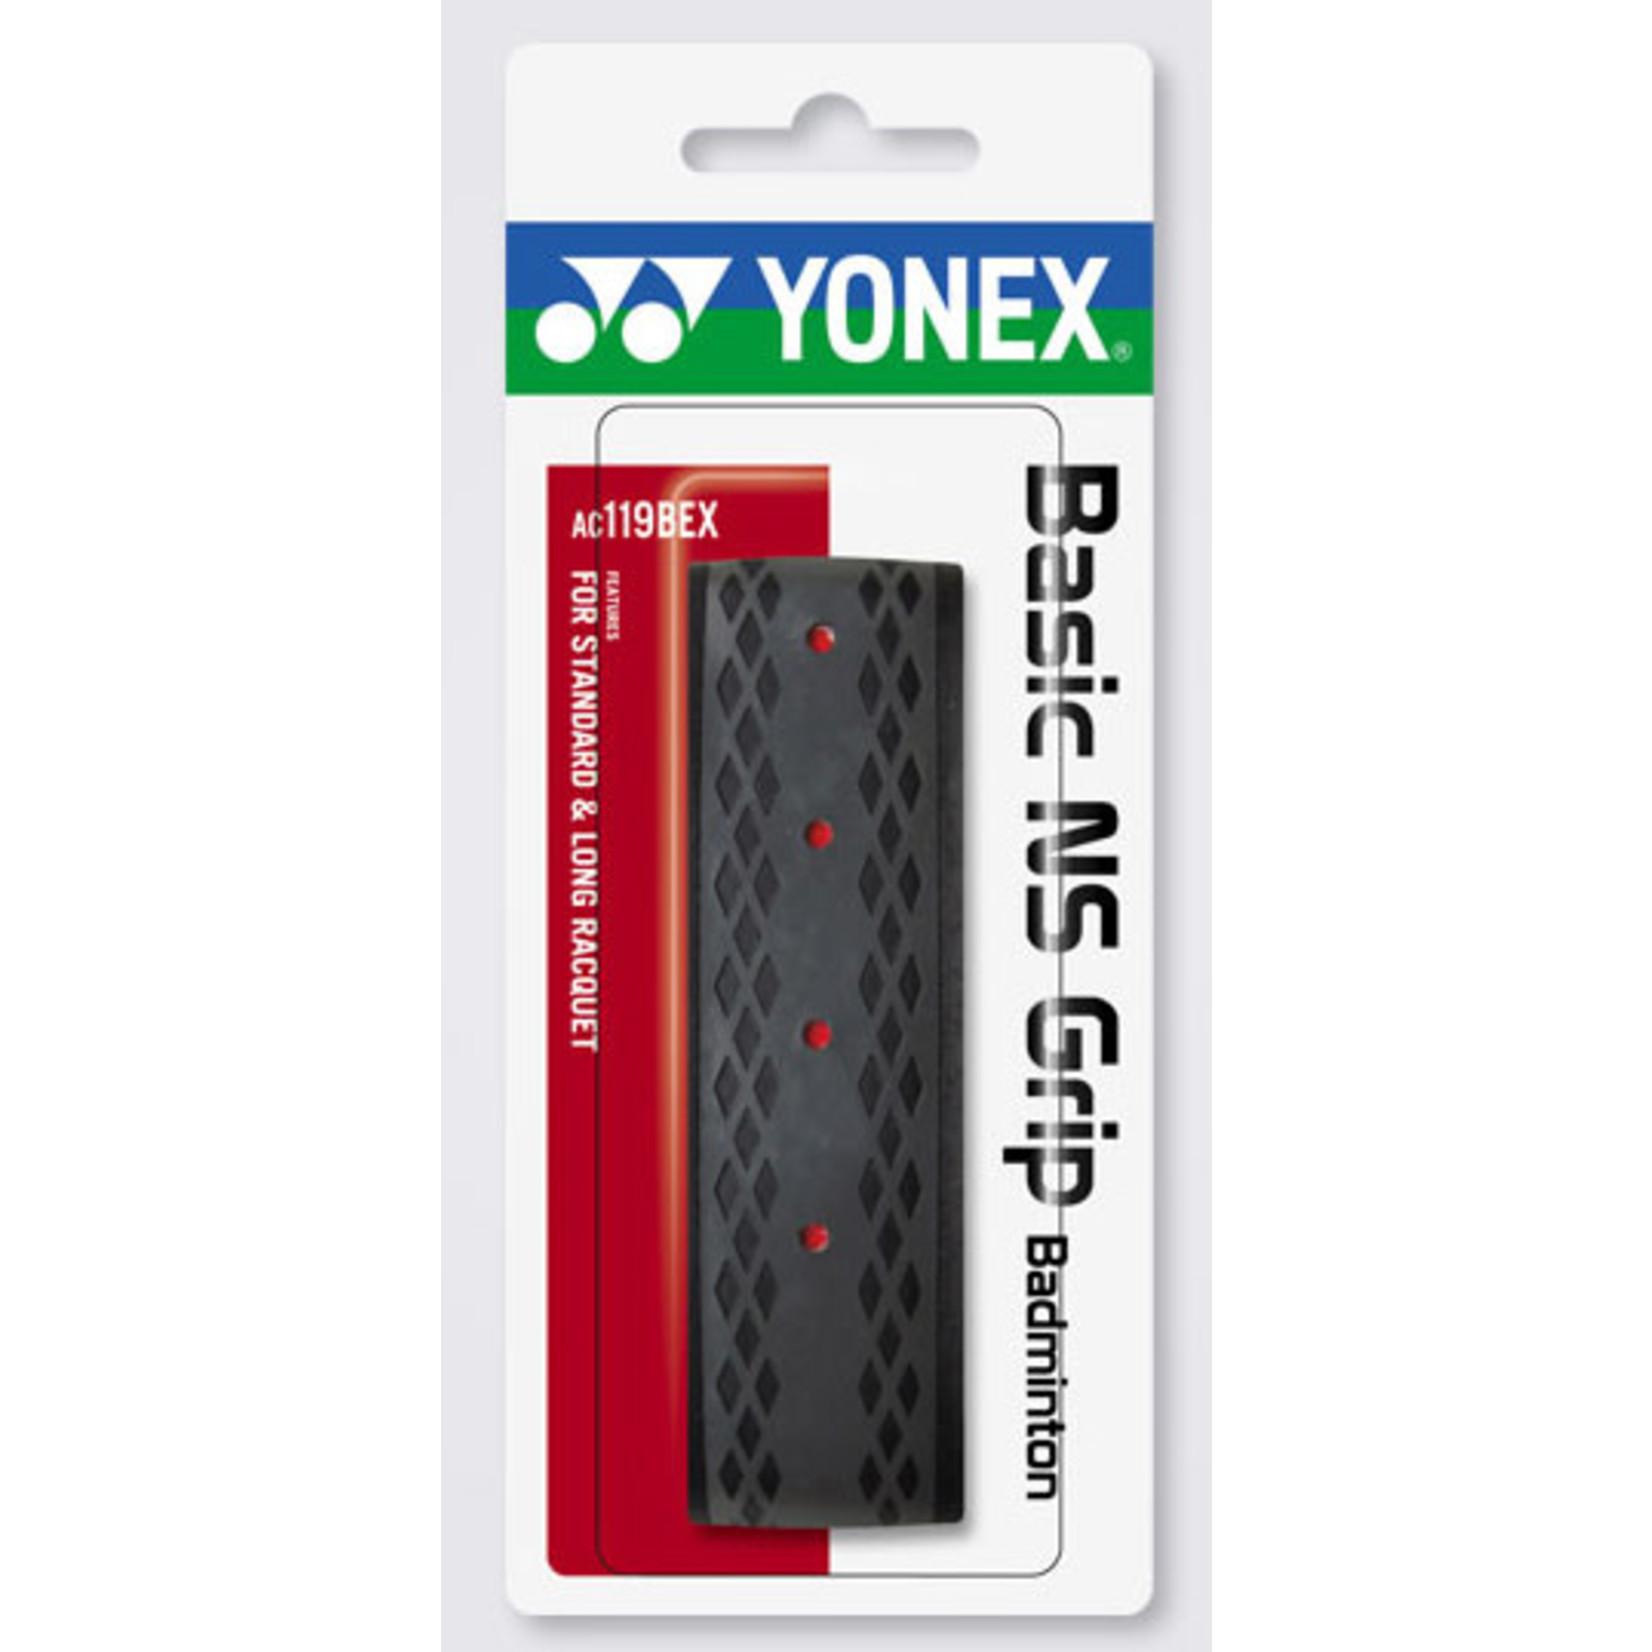 Yonex Yonex Basic NX Replacement Grip